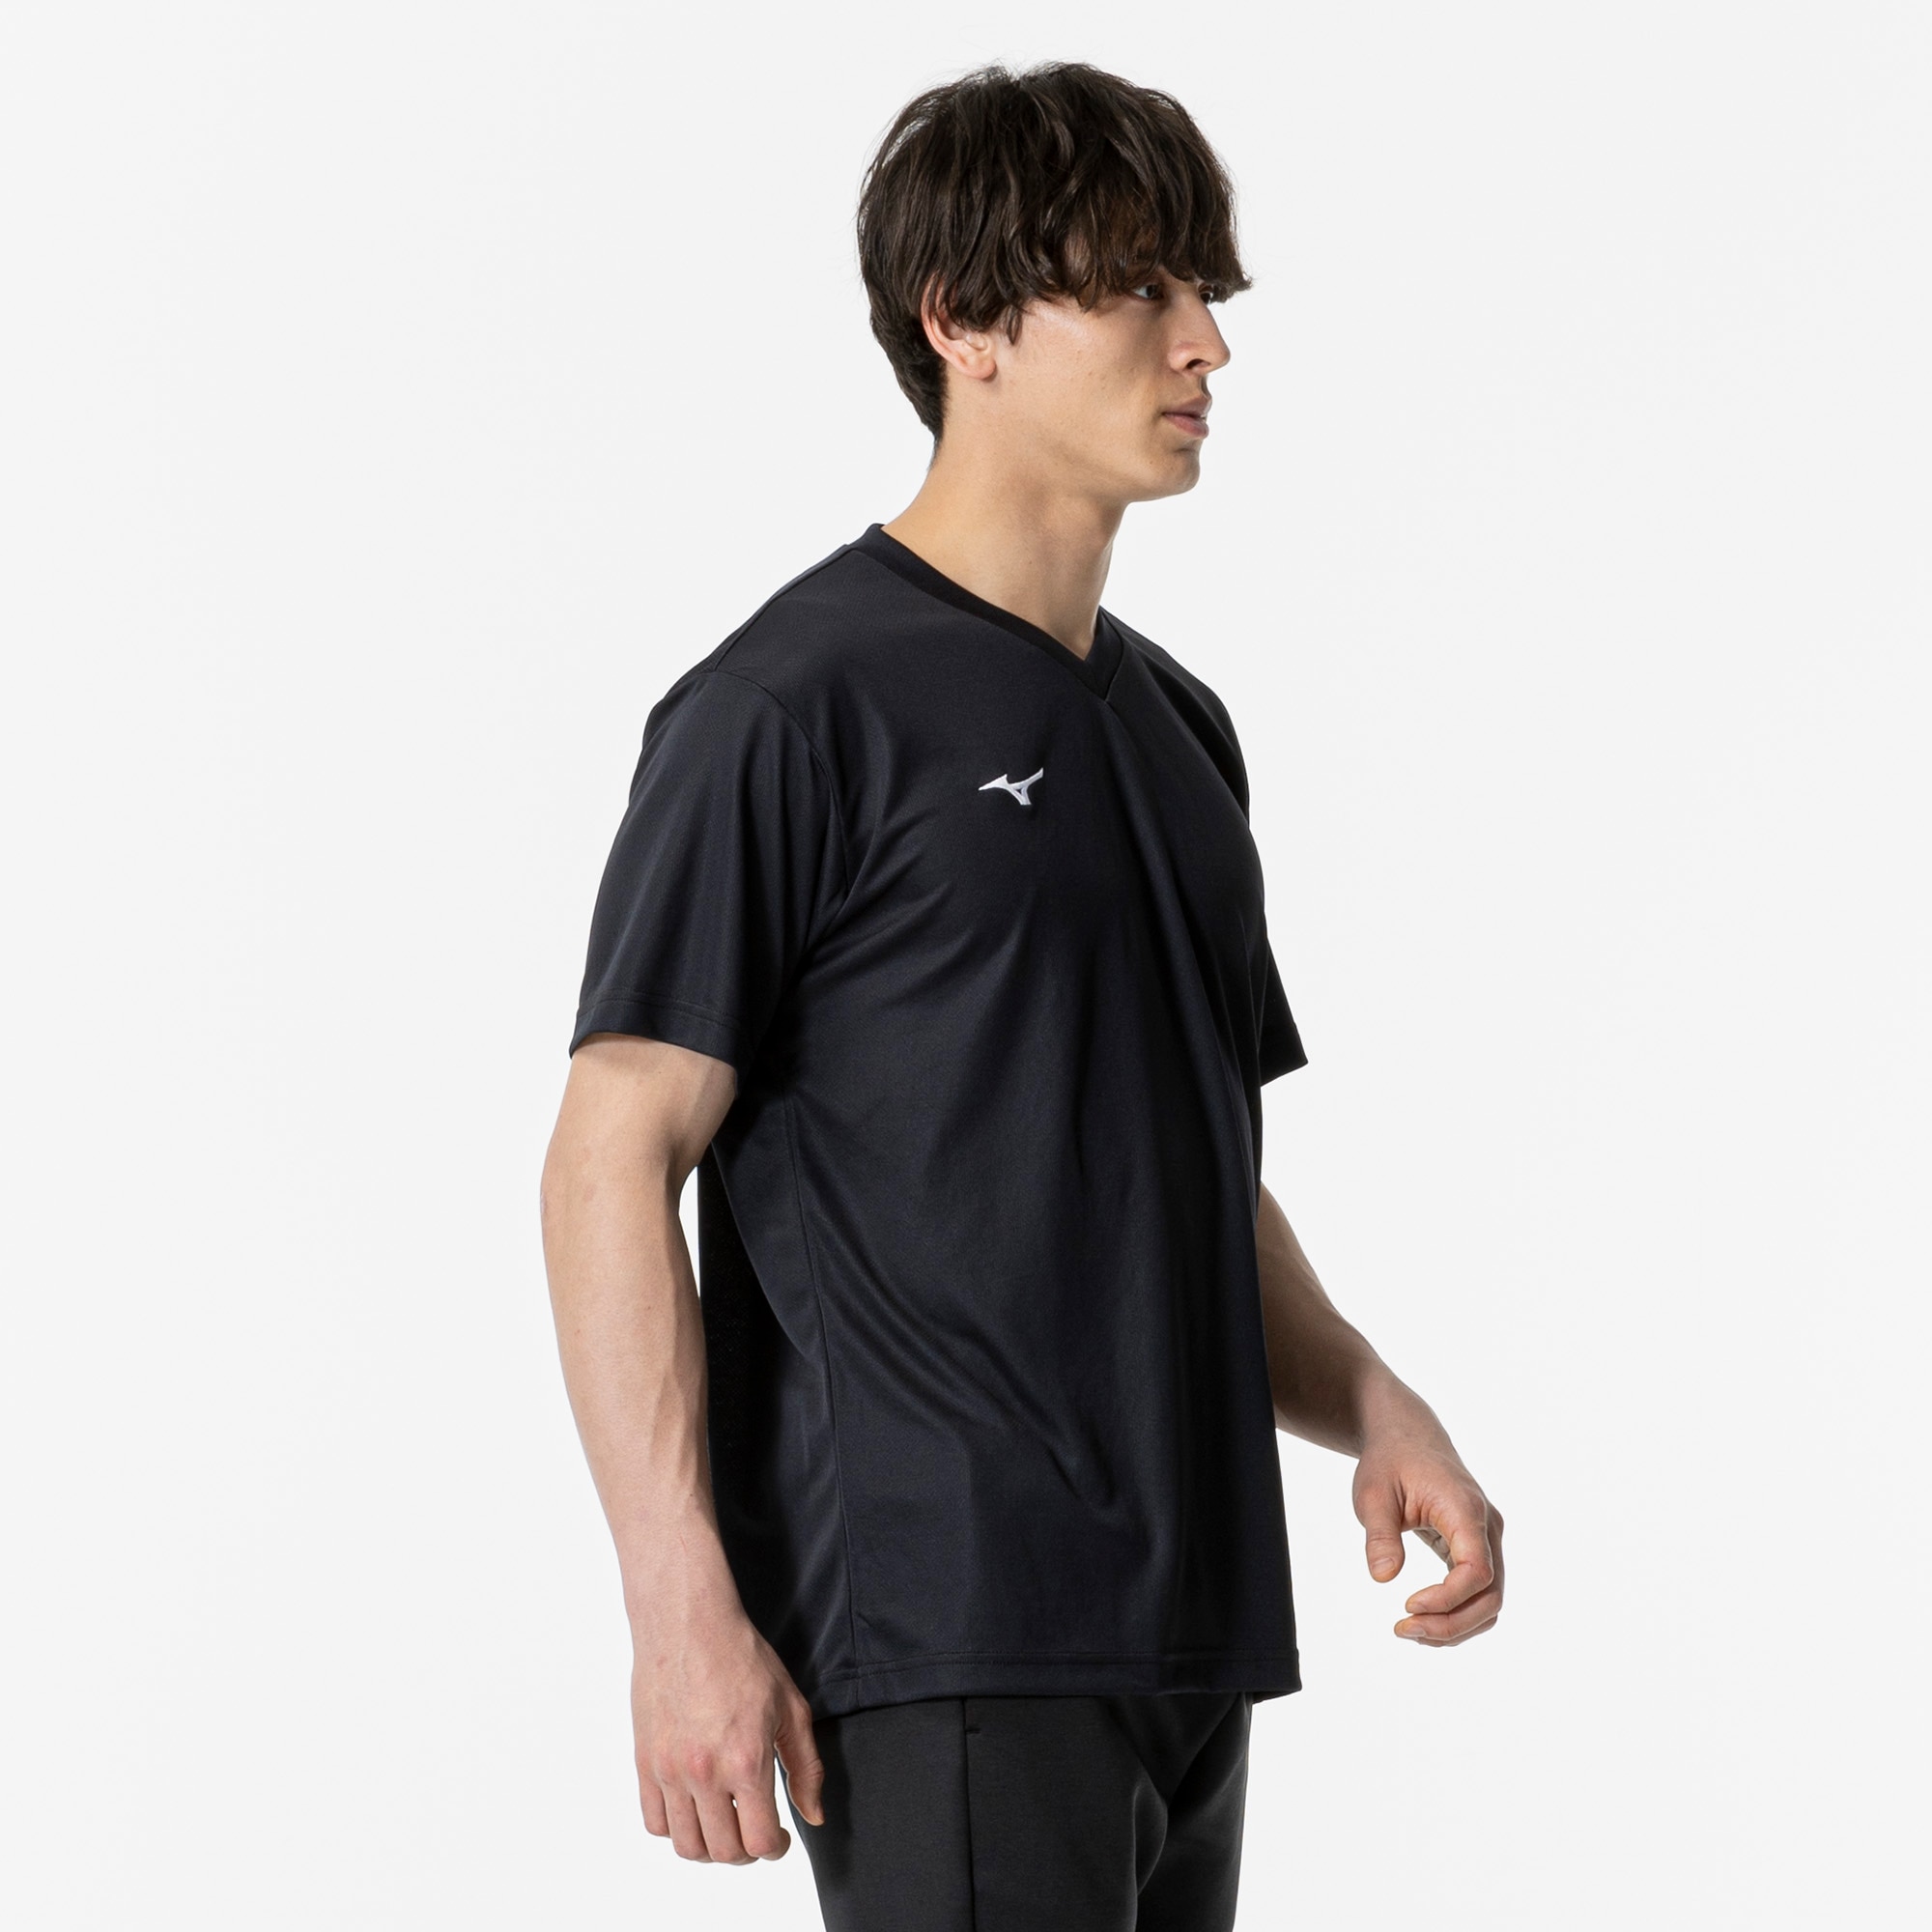 組成ポリエステル100%ミズノ トレーニングウェア ドライTシャツ 半袖 UPF15 吸汗速乾 32MA